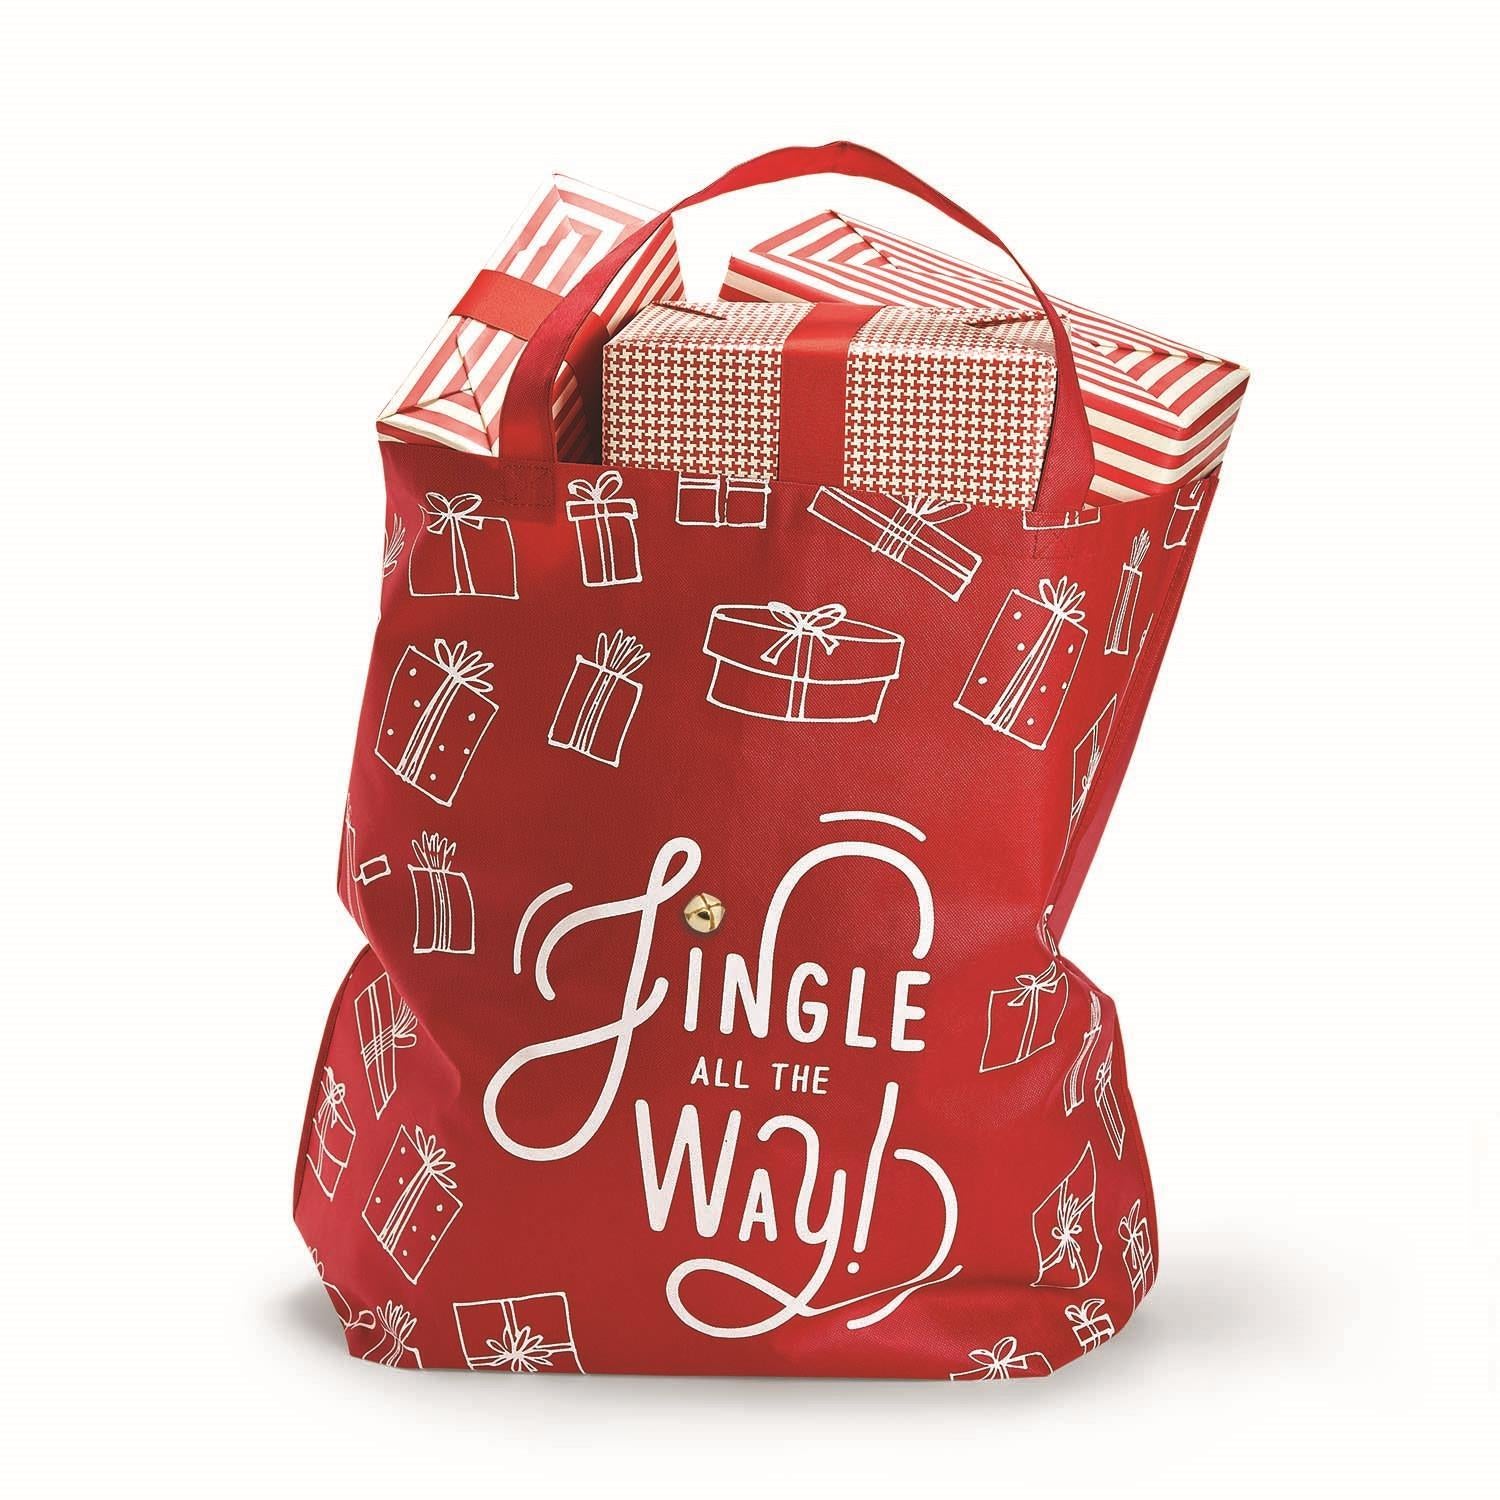 Oversized Christmas Tote Bag - Jingle All the Way!